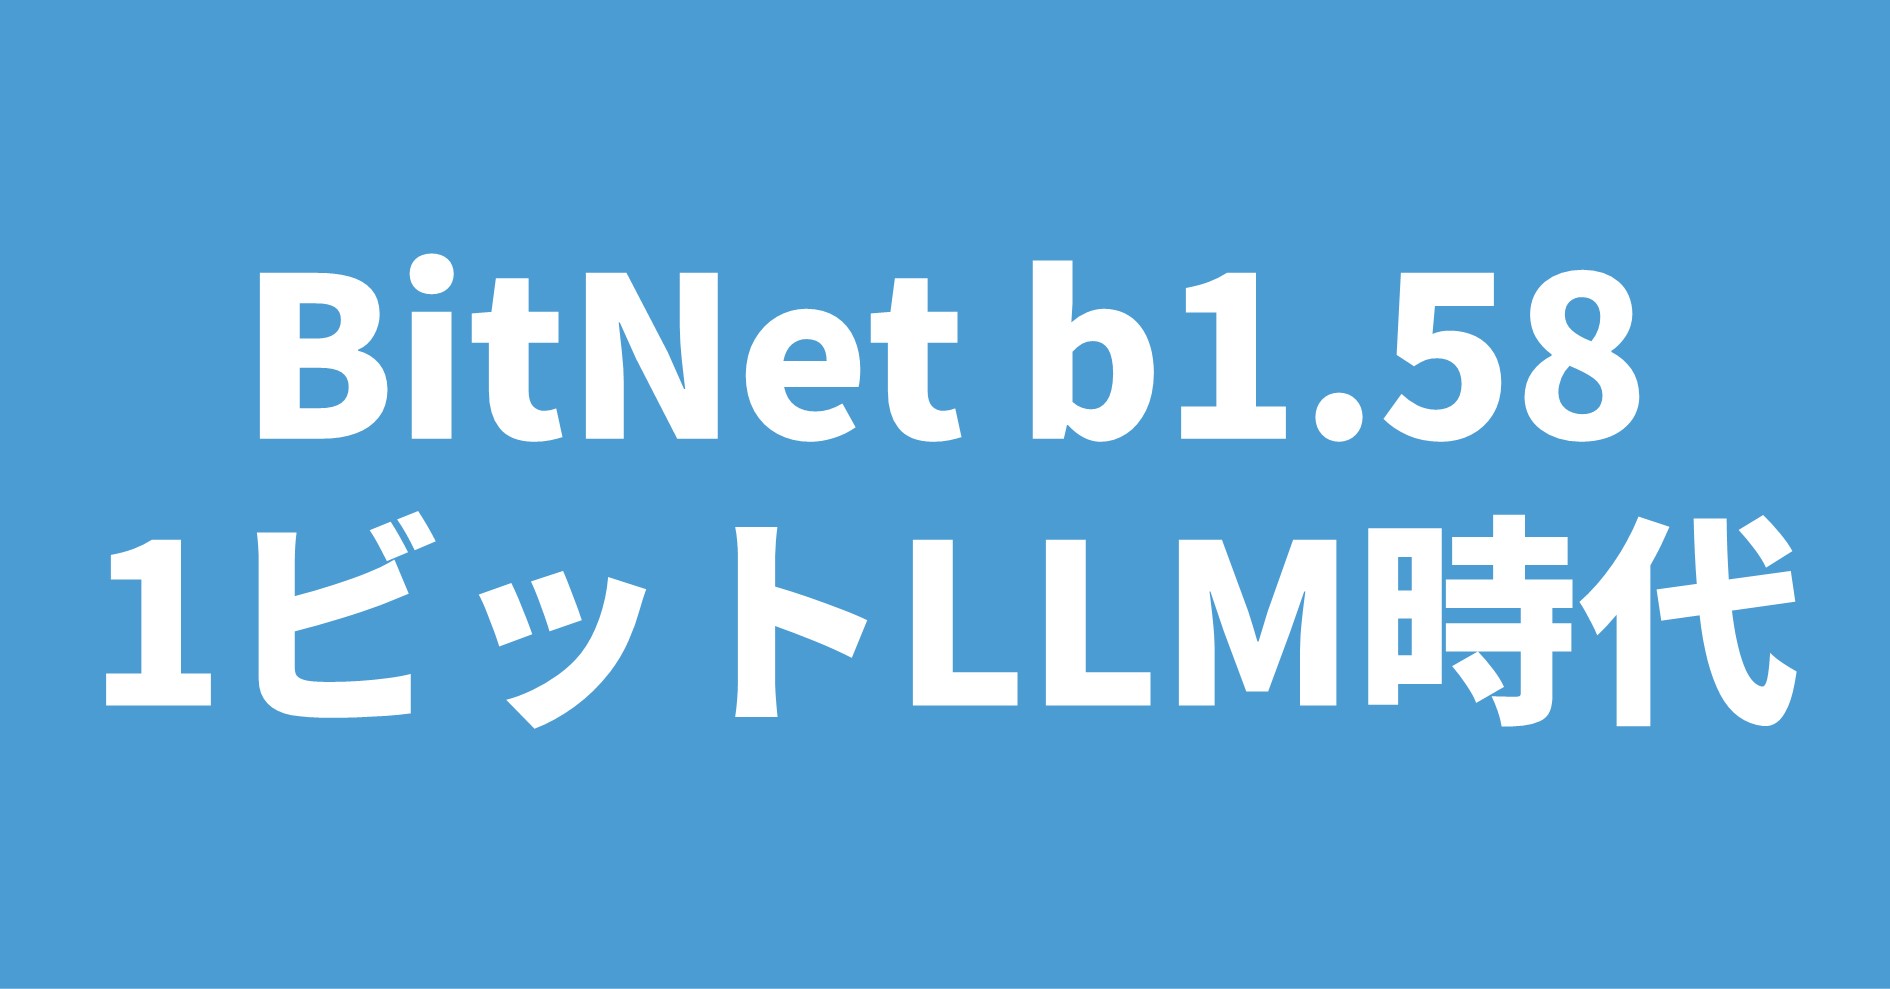 BitNet b1.58 1ビットLLM時代